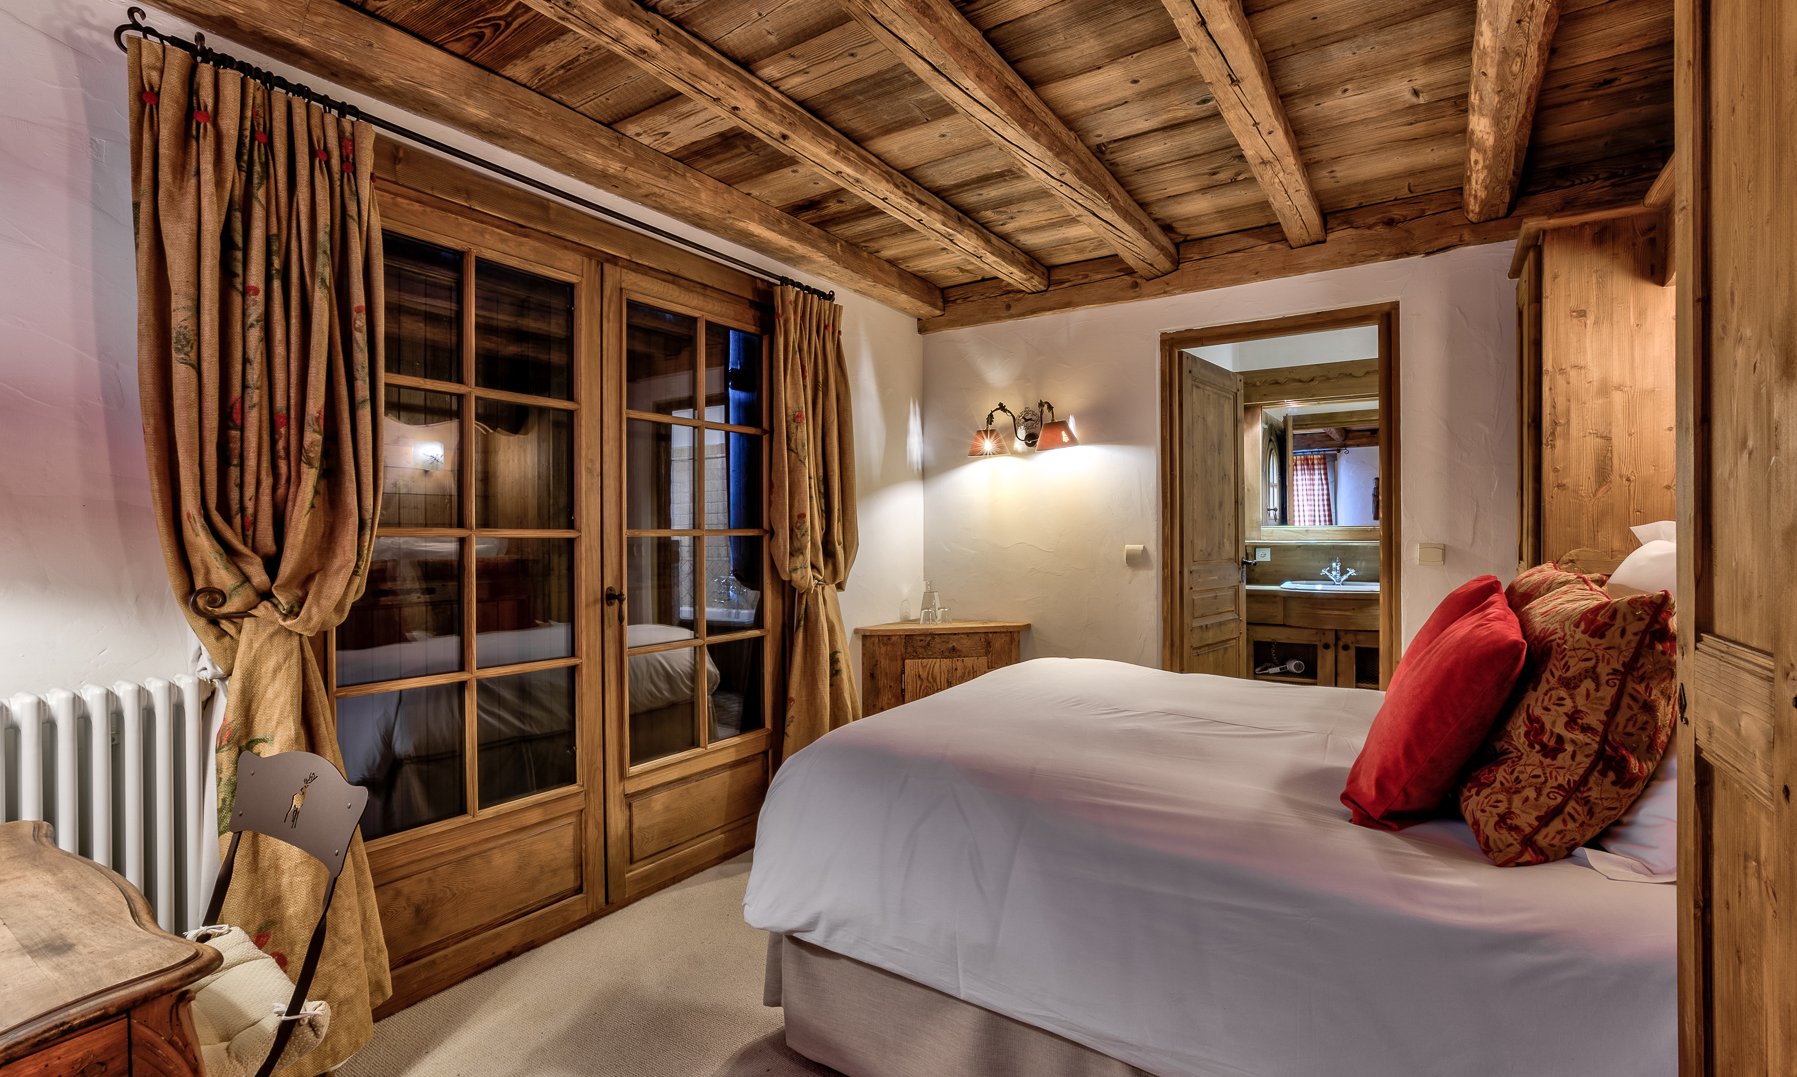 One of the lovely Bedrooms in Chalet Amarena Meribel